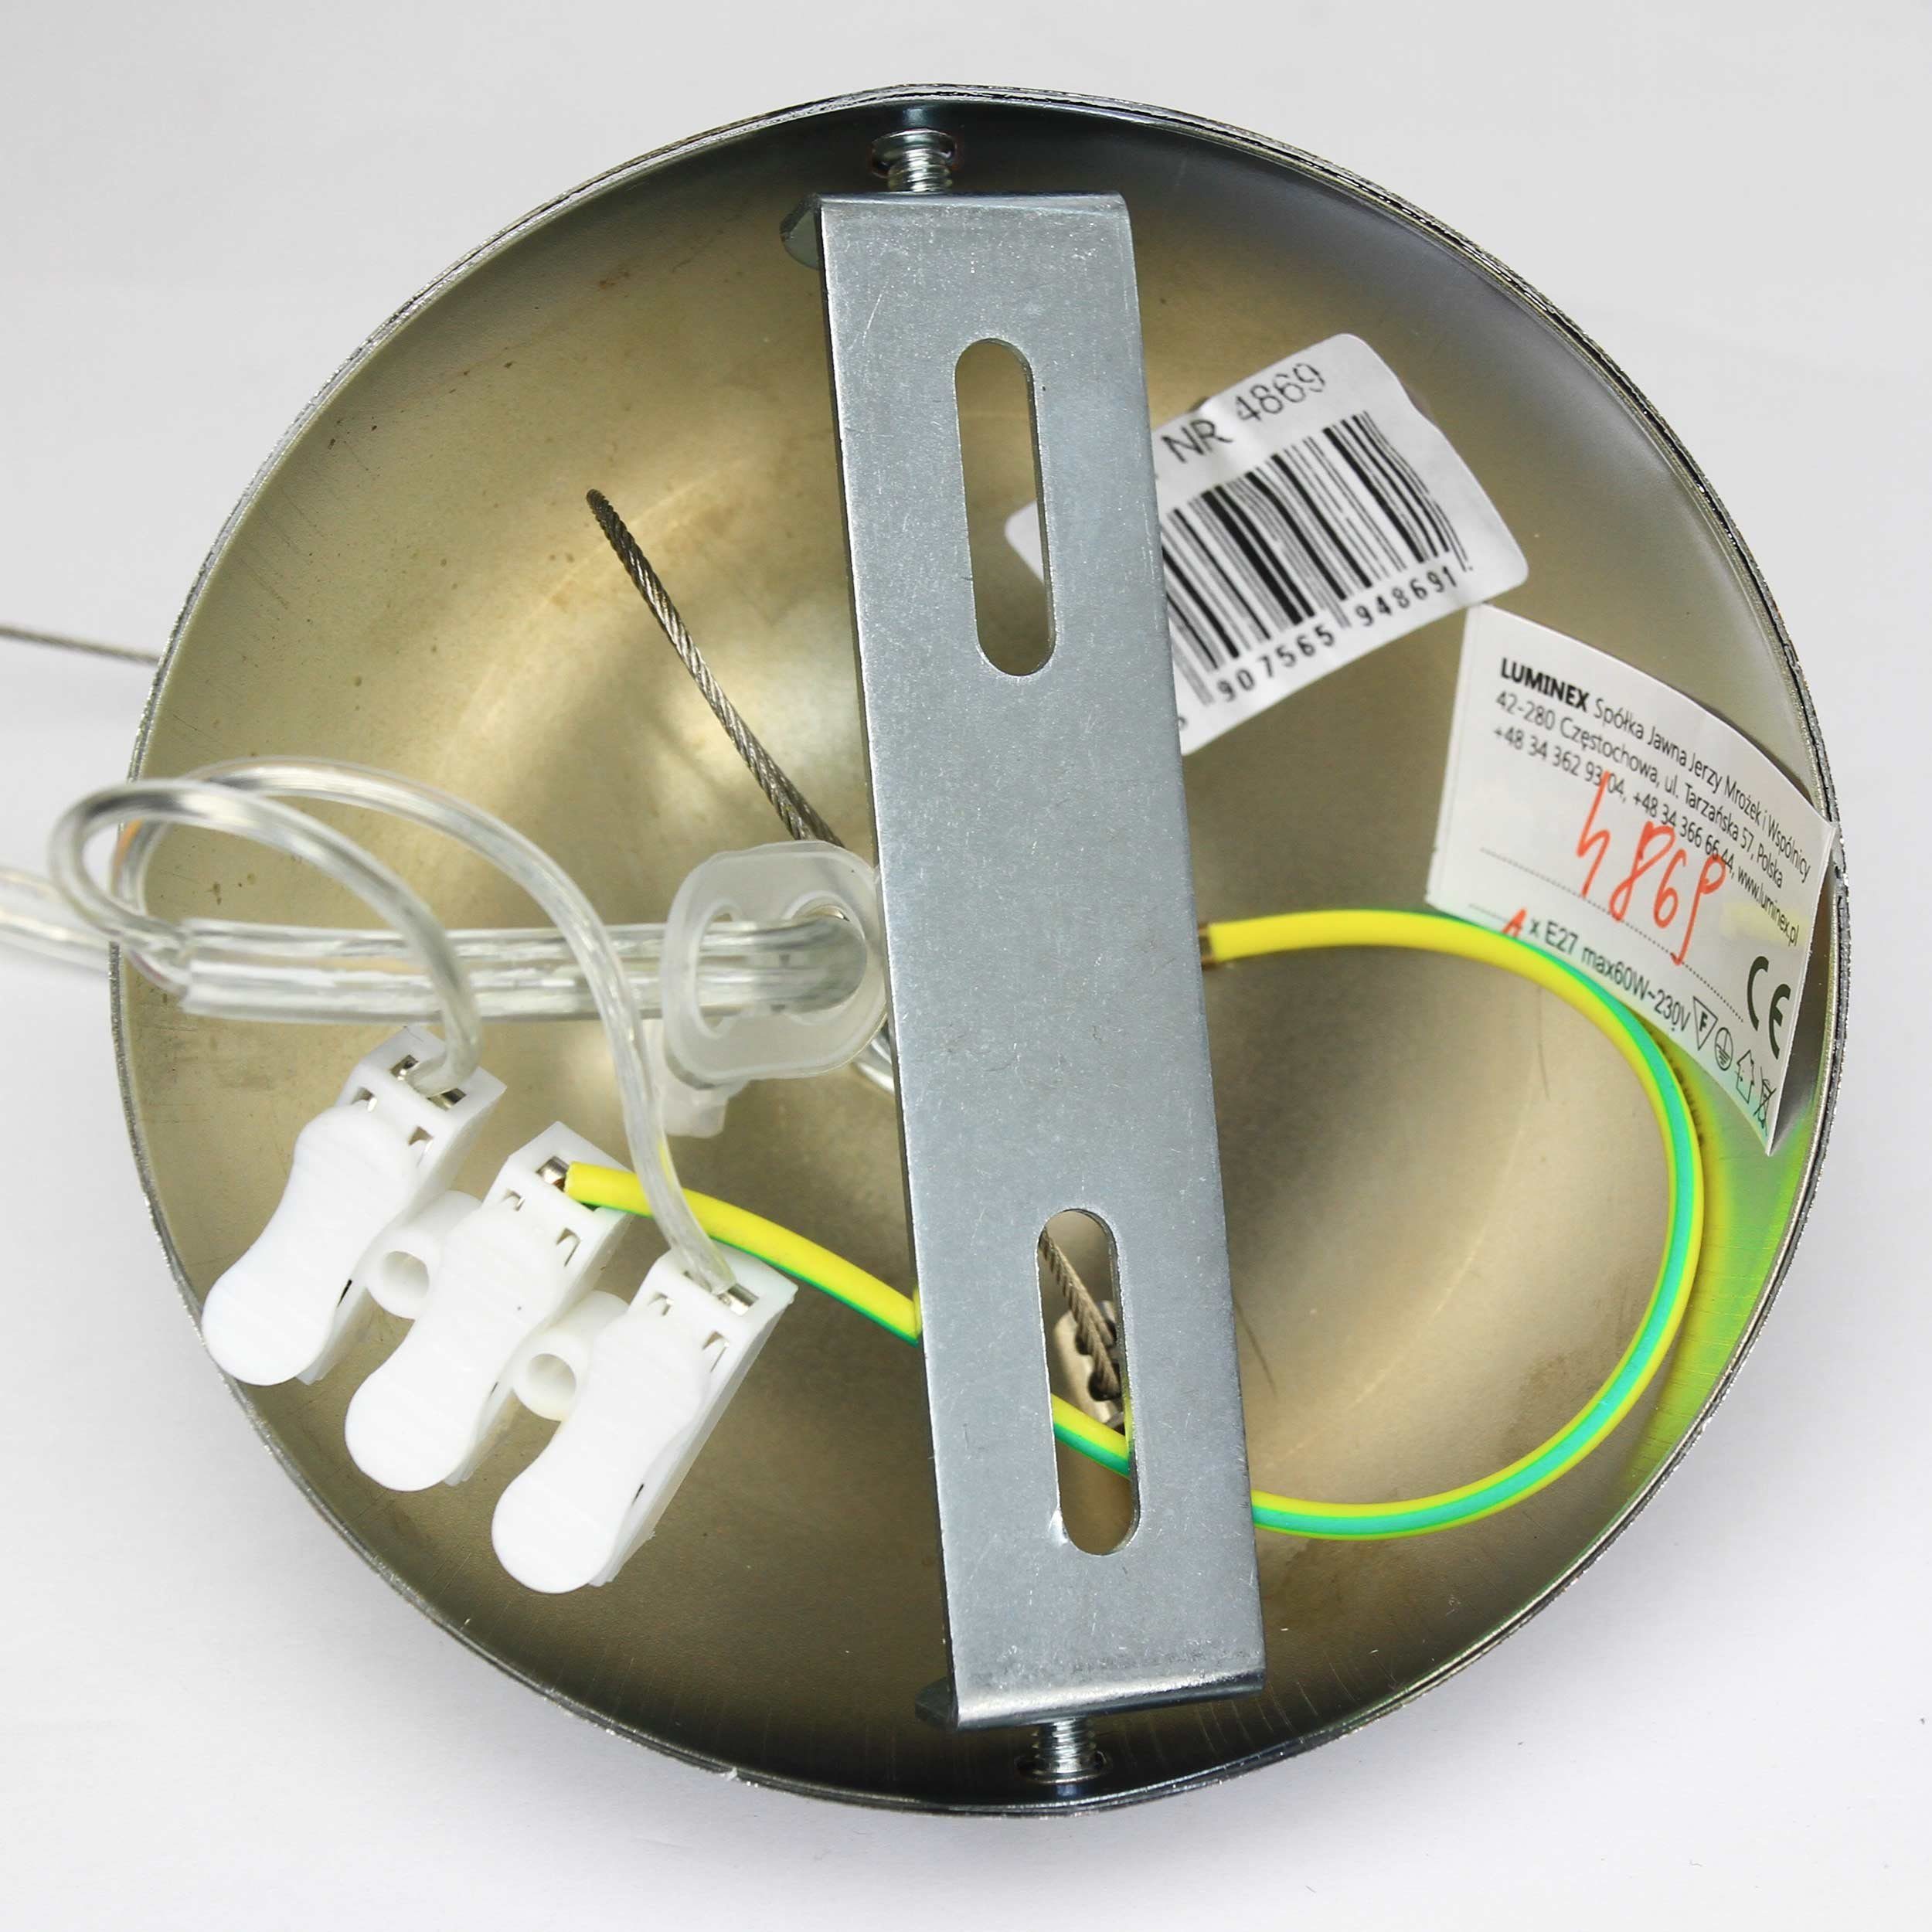 Weiße 3, Pendelleuchte Leuchtmittel, Lampe ohne SINGLE Hängelampe Kunststoff Industrie Pendelleuchte Küche Licht-Erlebnisse Metall